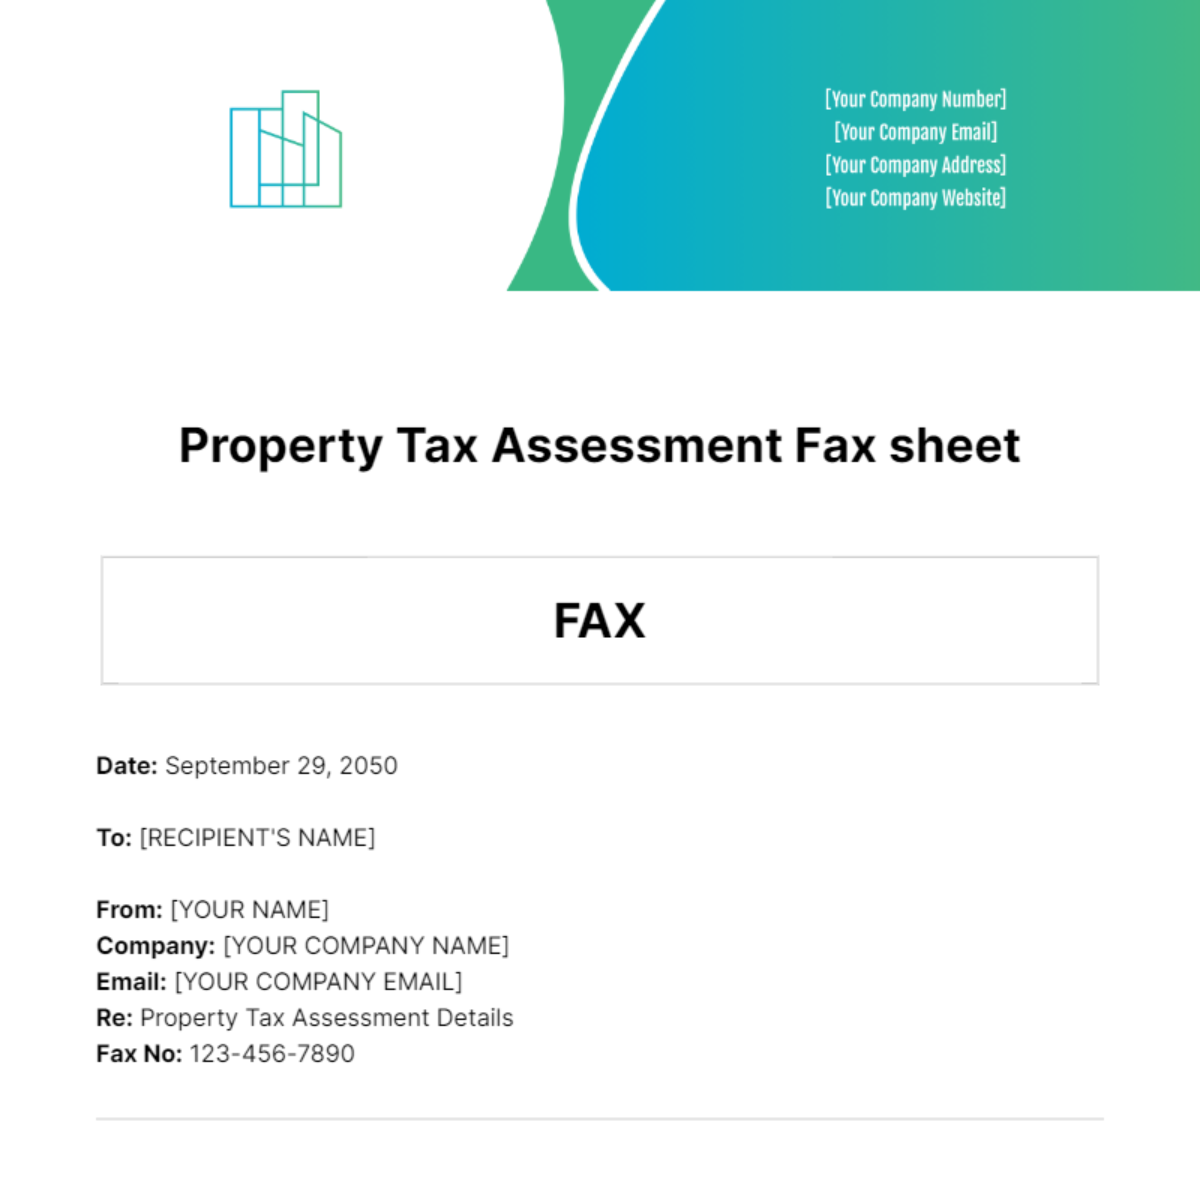 Property Tax Assessment Fax Sheet Template